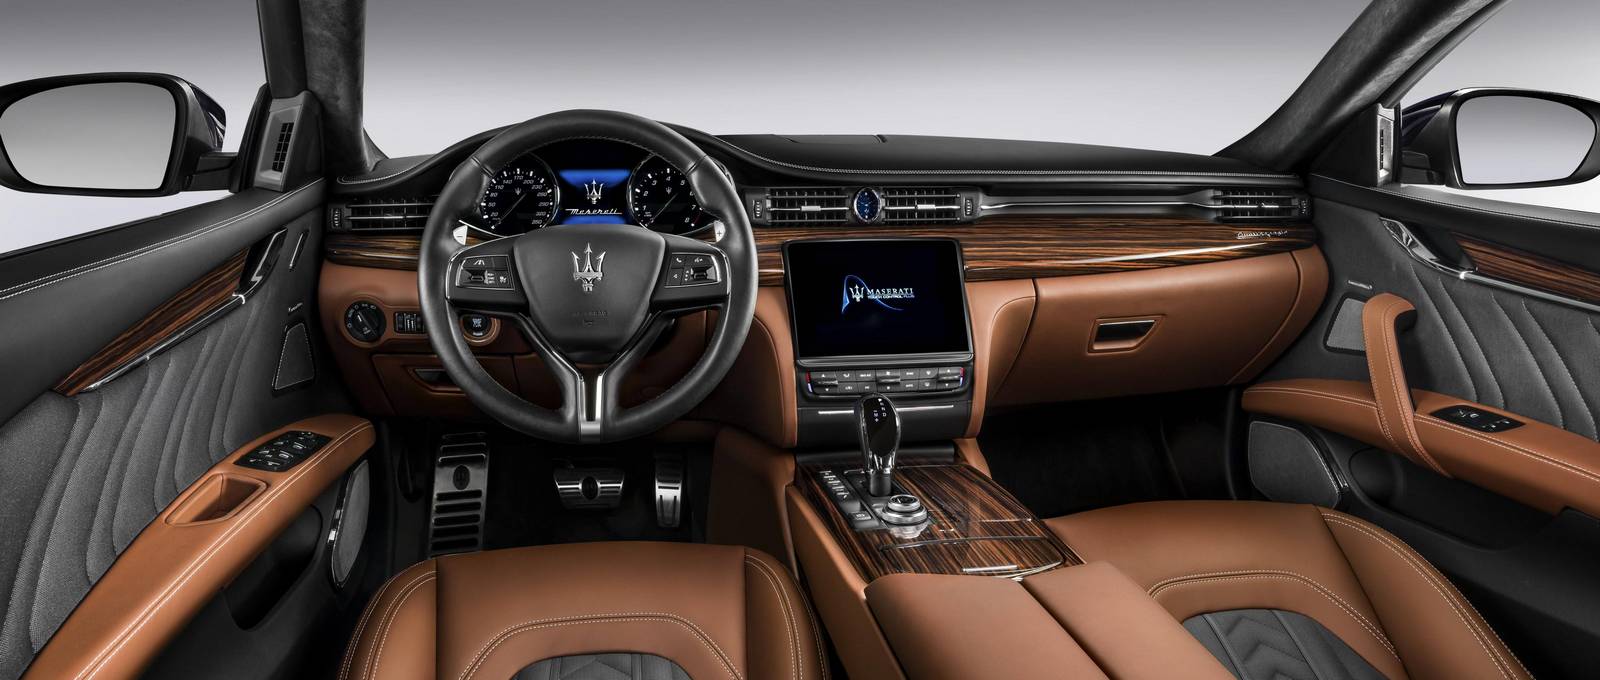 Maserati представил 2017 Quattroporte